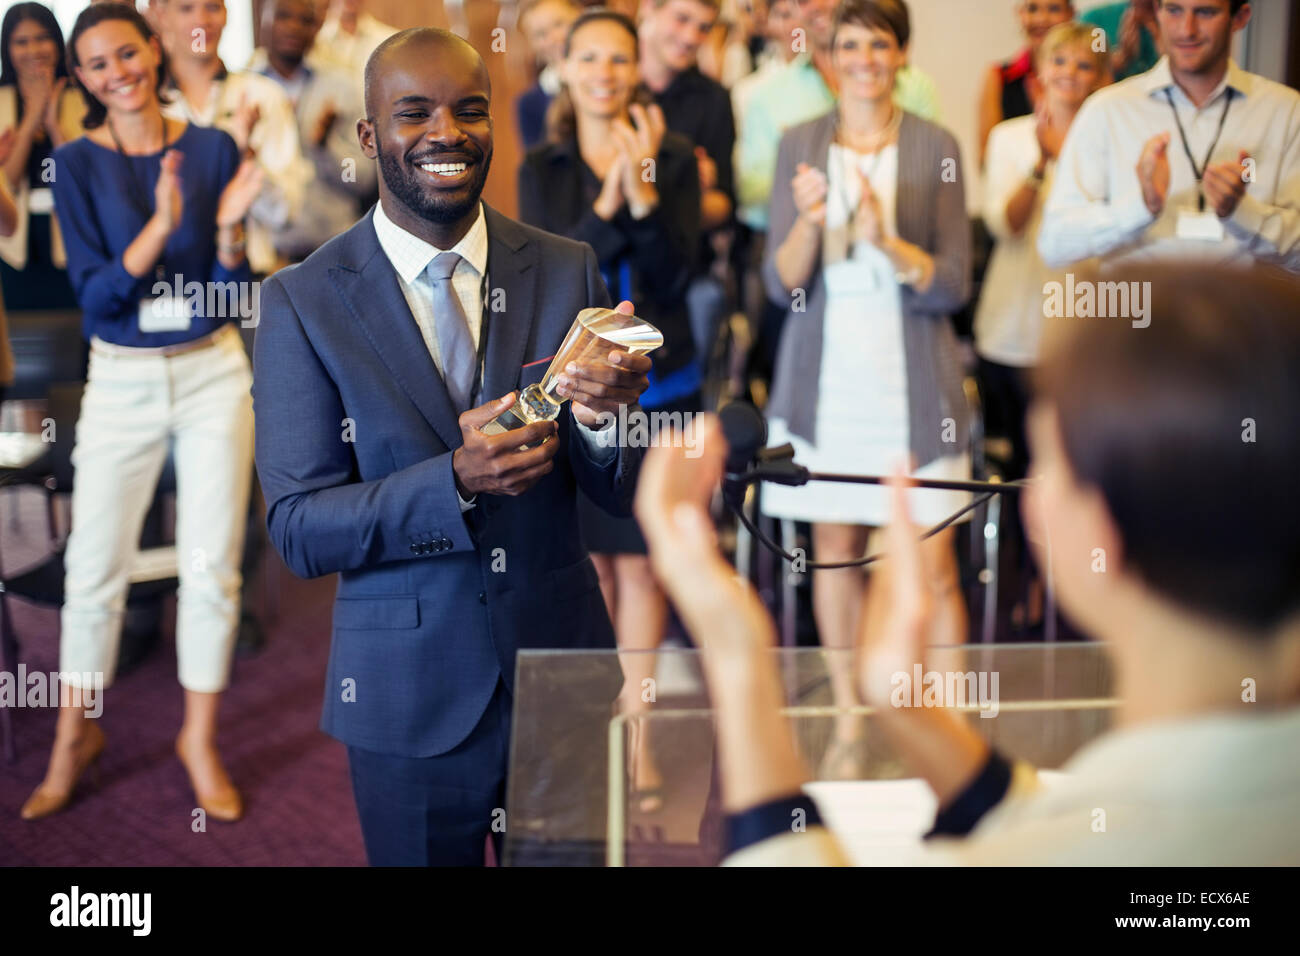 Portrait of young man holding trophy, debout dans la salle de conférence, de sourire en public qui applaudit Banque D'Images